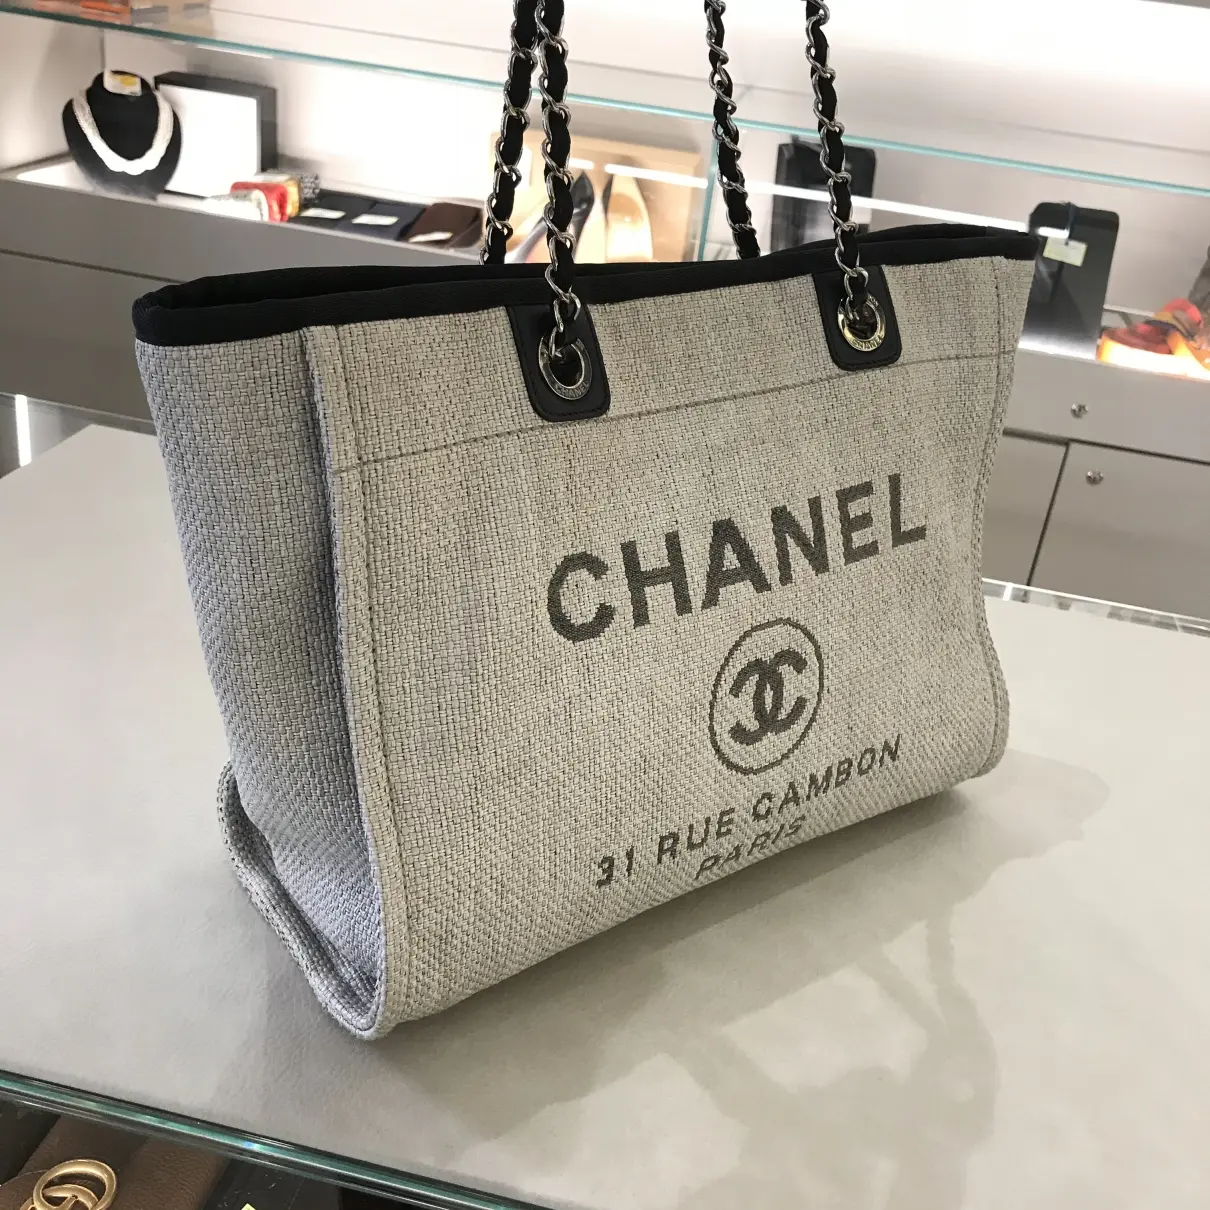 Deauville Chain cloth tote Chanel